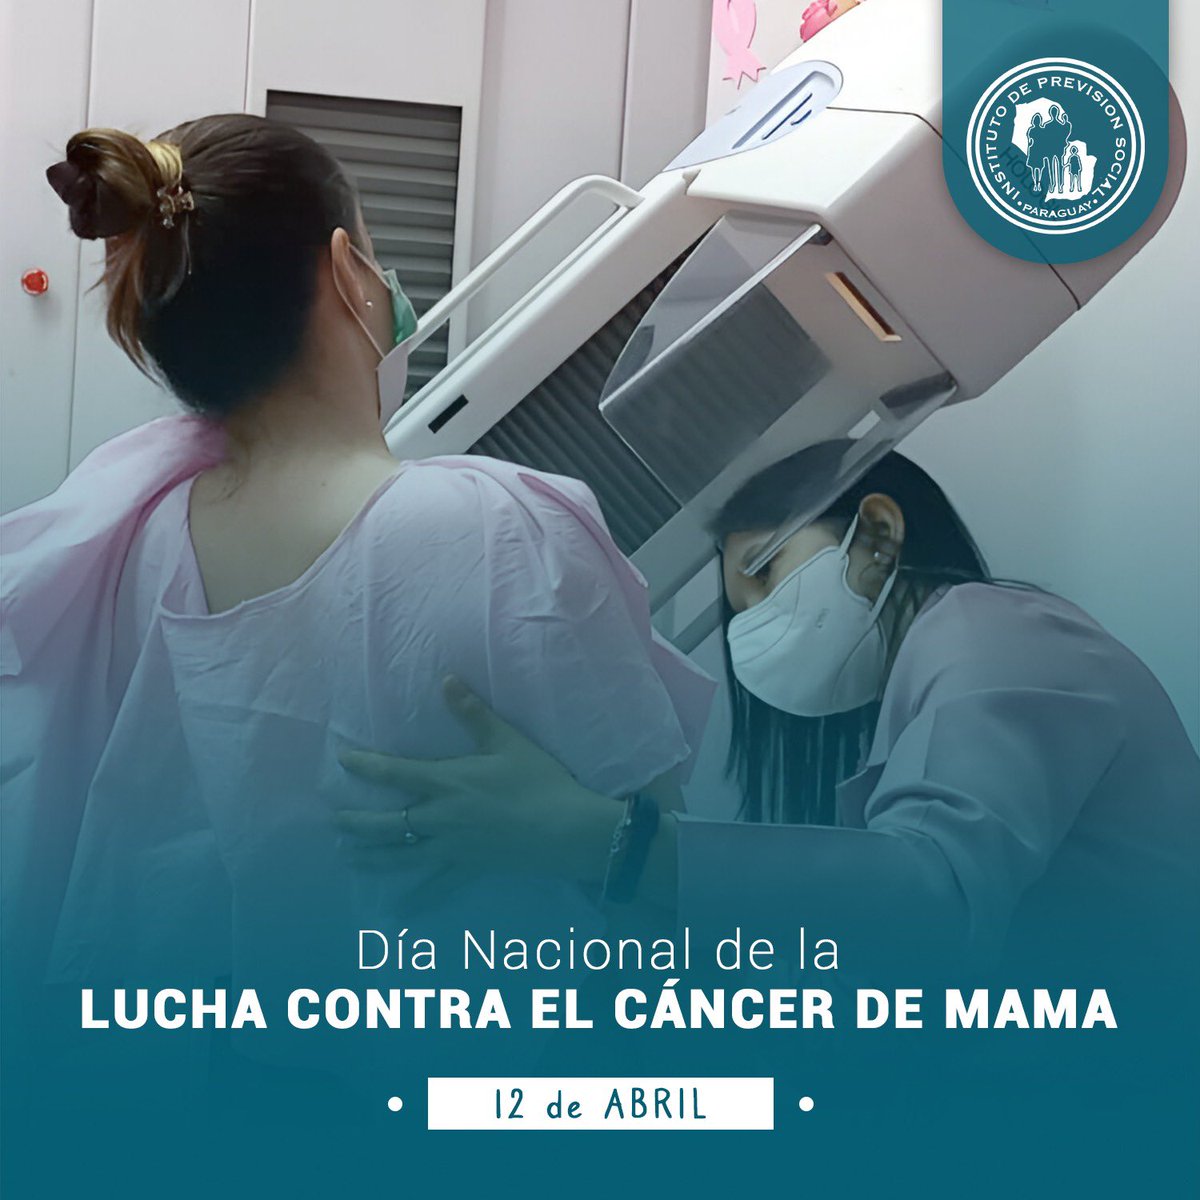 👉🏼 El 12 de abril, Paraguay conmemora el Día Nacional de Lucha contra el cáncer de mama según Ley Nº 4684. Entre 400 y 450 vidas son perdidas anualmente por este cáncer, con 800 nuevos casos diagnosticados, especialmente en mujeres jóvenes. #CáncerDeMama #Prevención